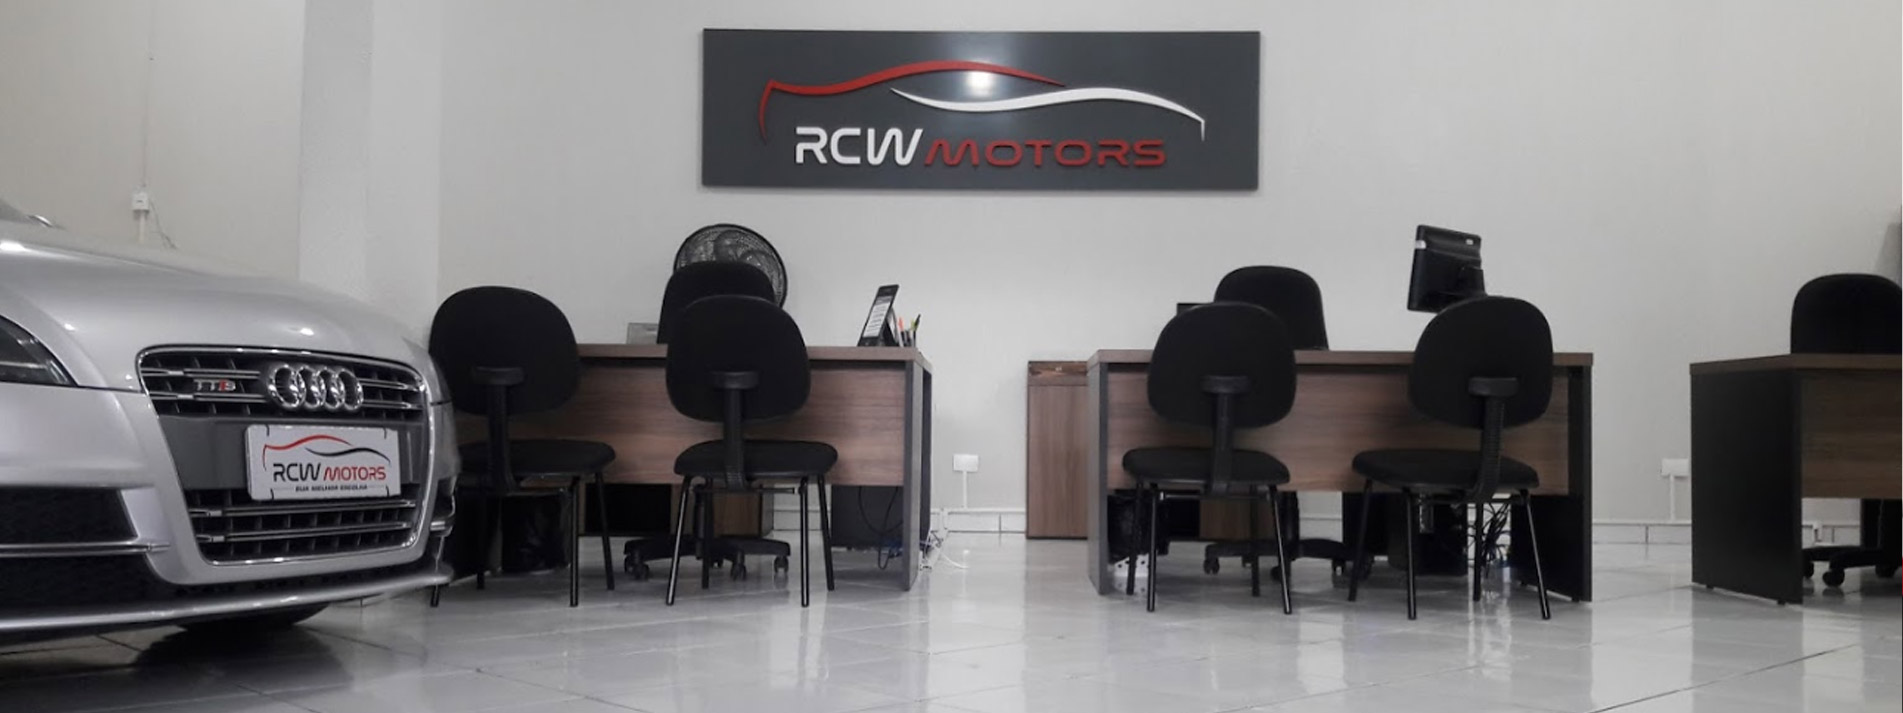 RCW Motors